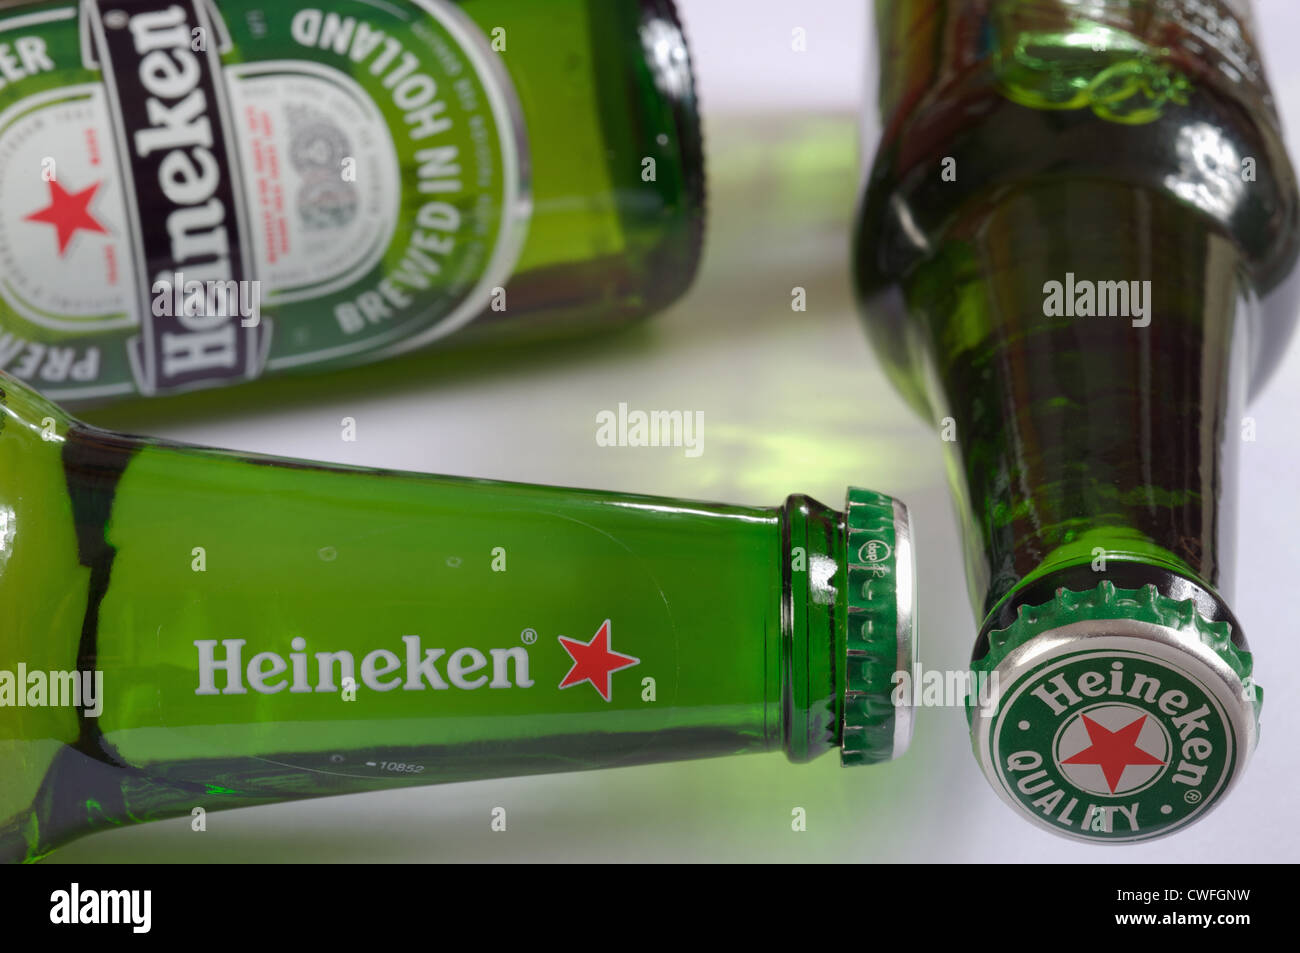 Bouteille de bière Heineken Banque D'Images